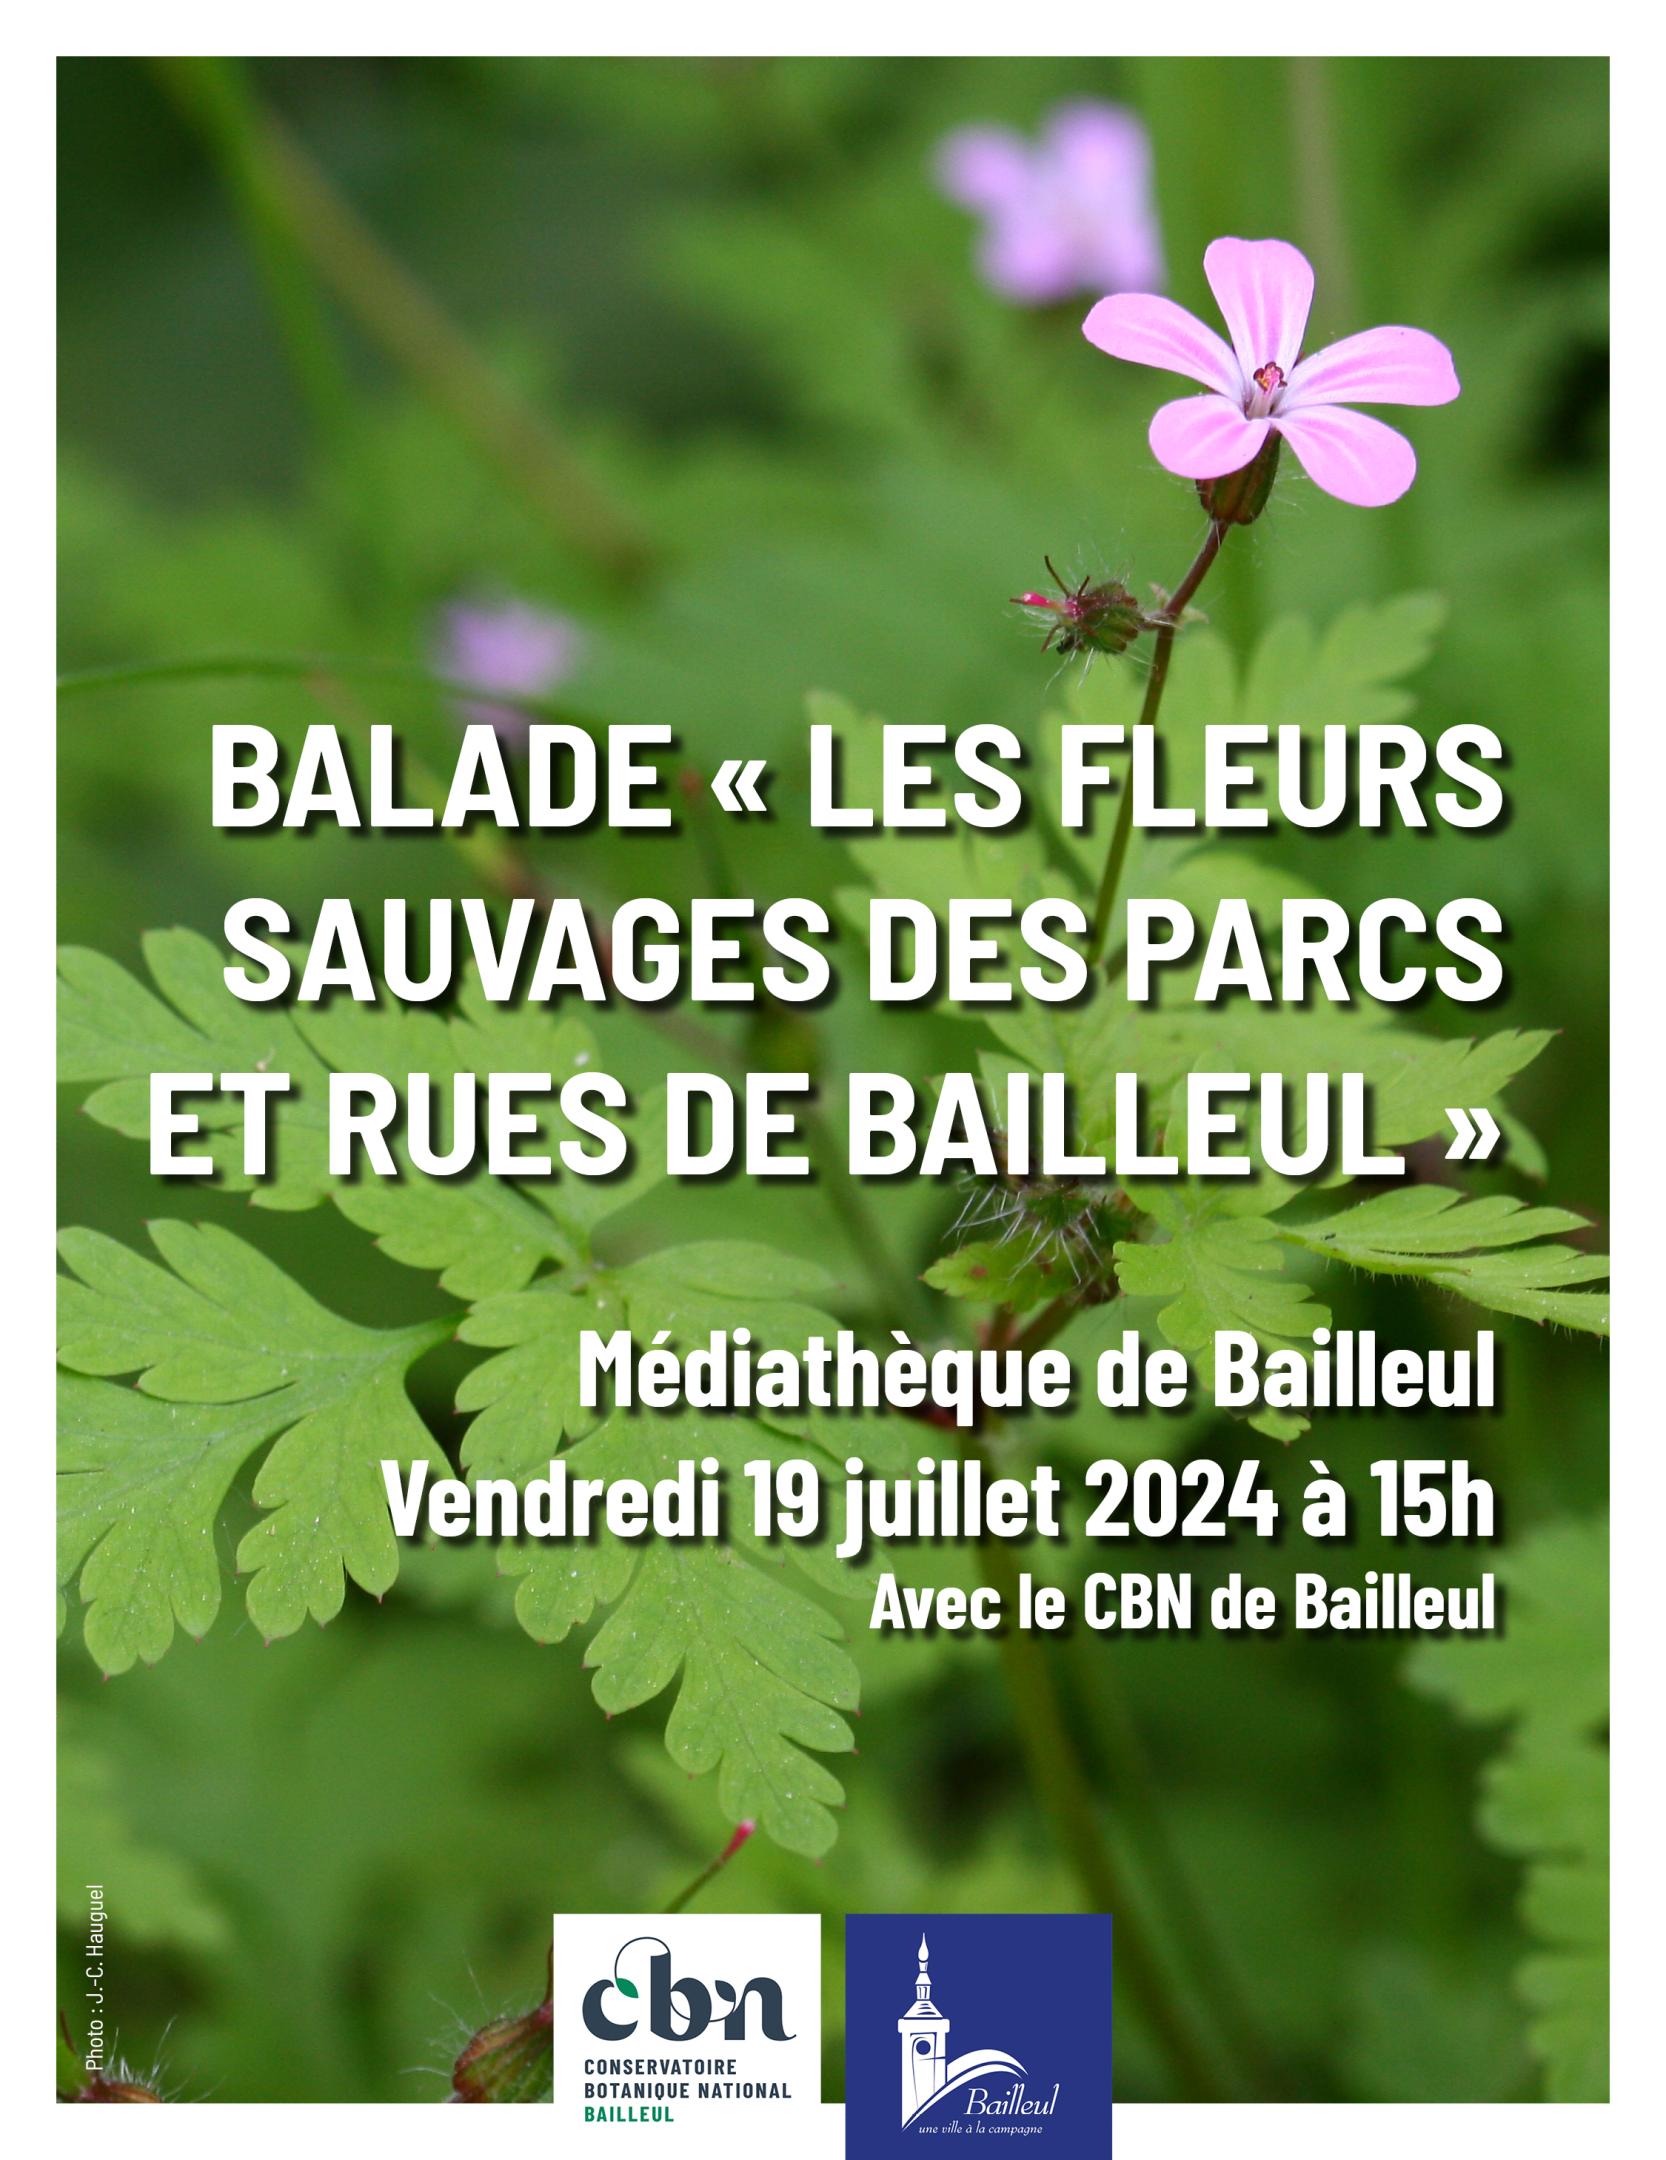 Balade "Les fleurs sauvages des parcs et rues de Bailleul" (Nord)